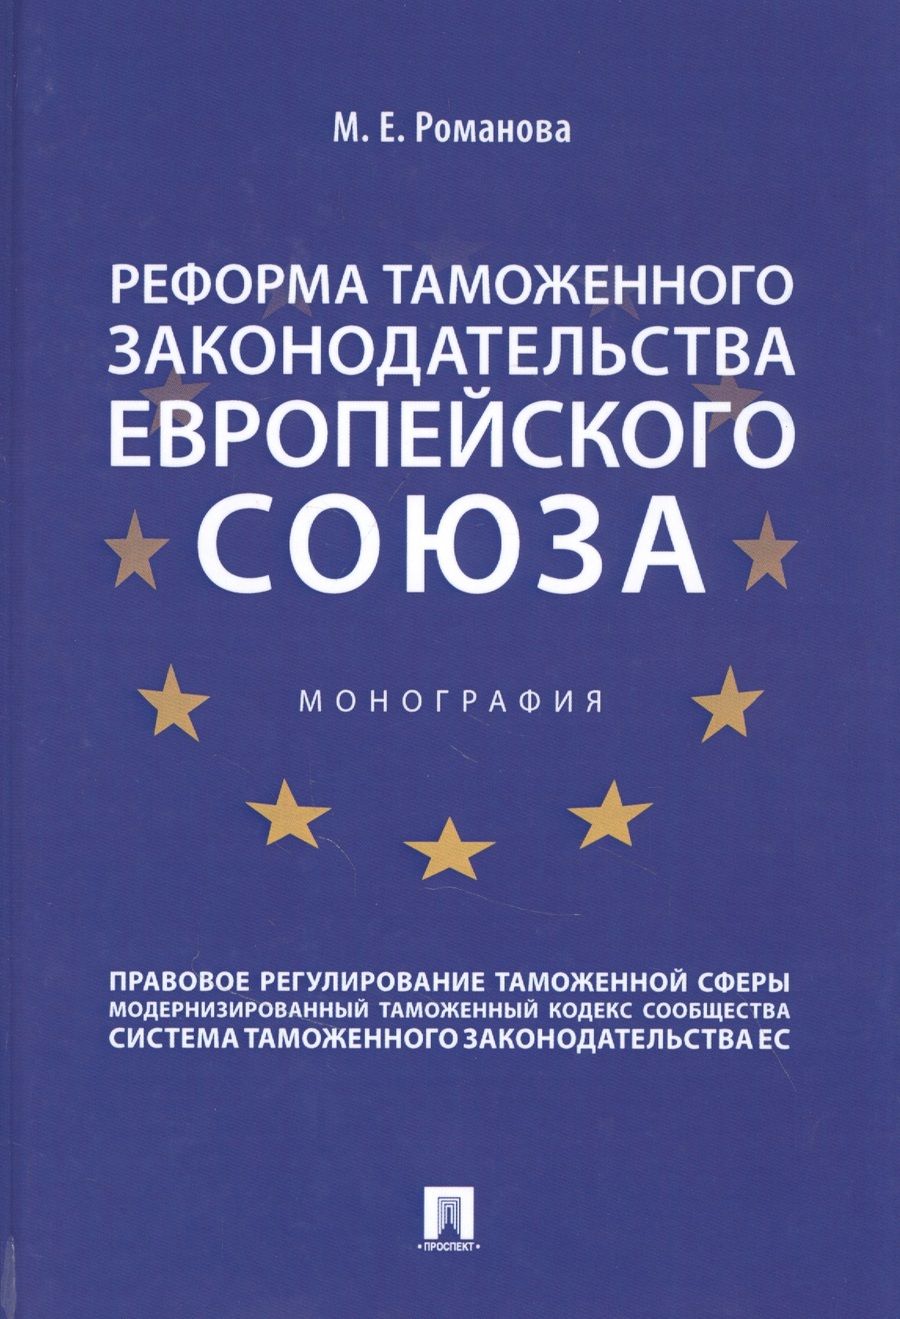 Обложка книги "Марина Романова: Реформа таможенного законодательства Европейского союза"